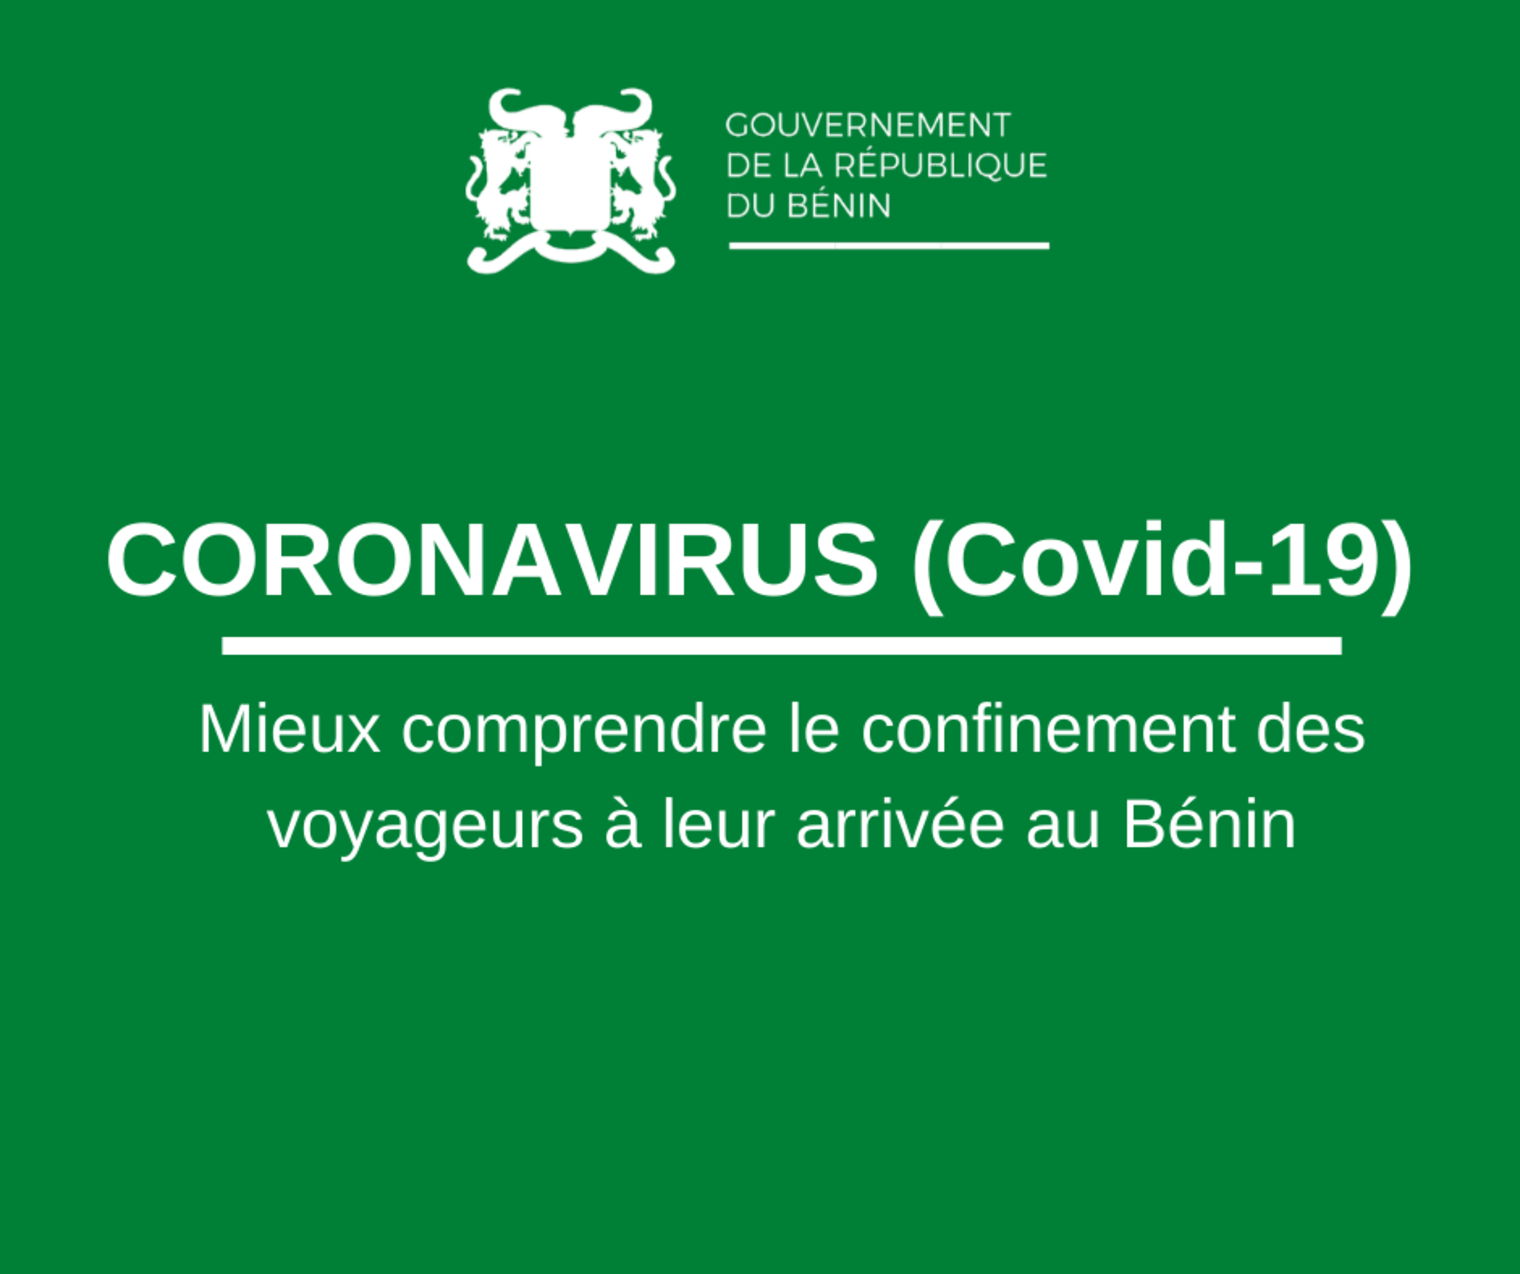 CORONAVIRUS - Quid du confinement obligatoire des voyageurs à leur arrivée au Bénin ?